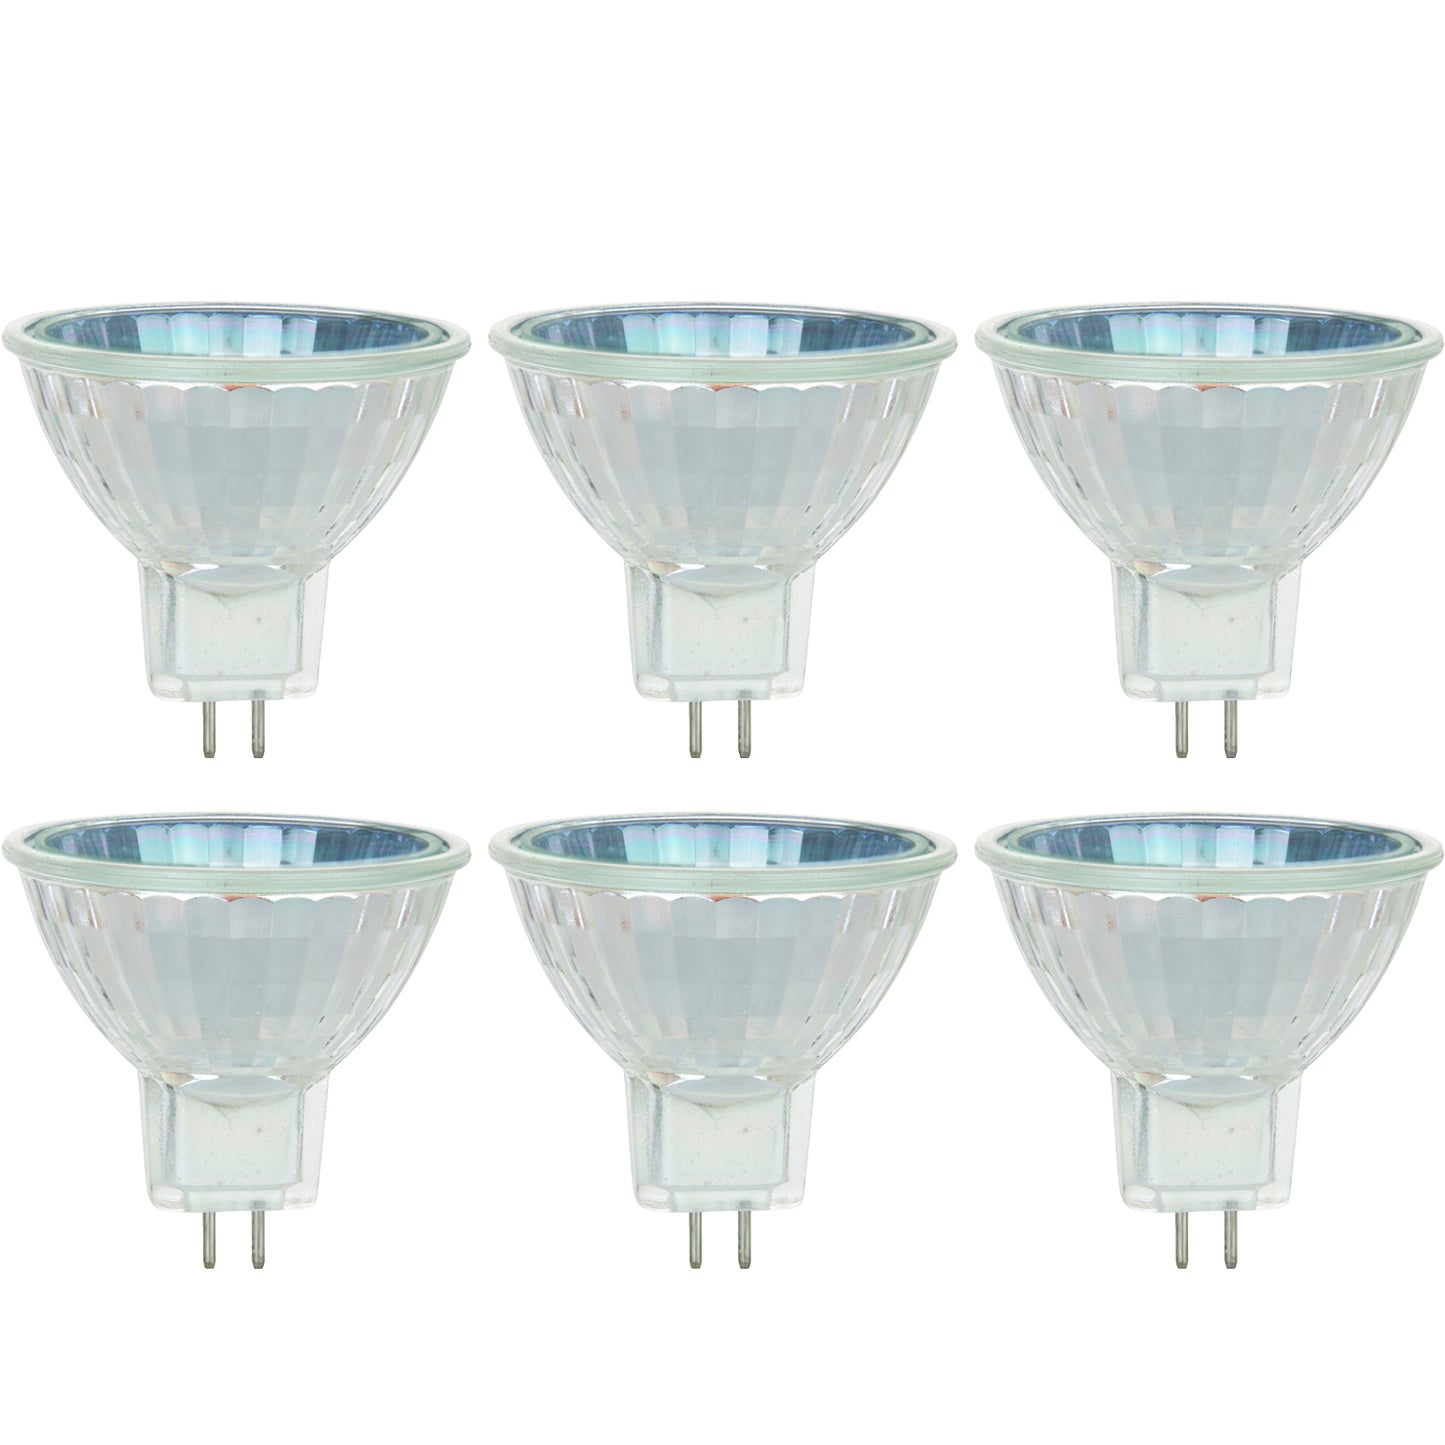 Sunlite 35MR16/CG/FL/120V/6PK Halogen 35W 120V MR16 Flood Light Bulbs (6 Pack)